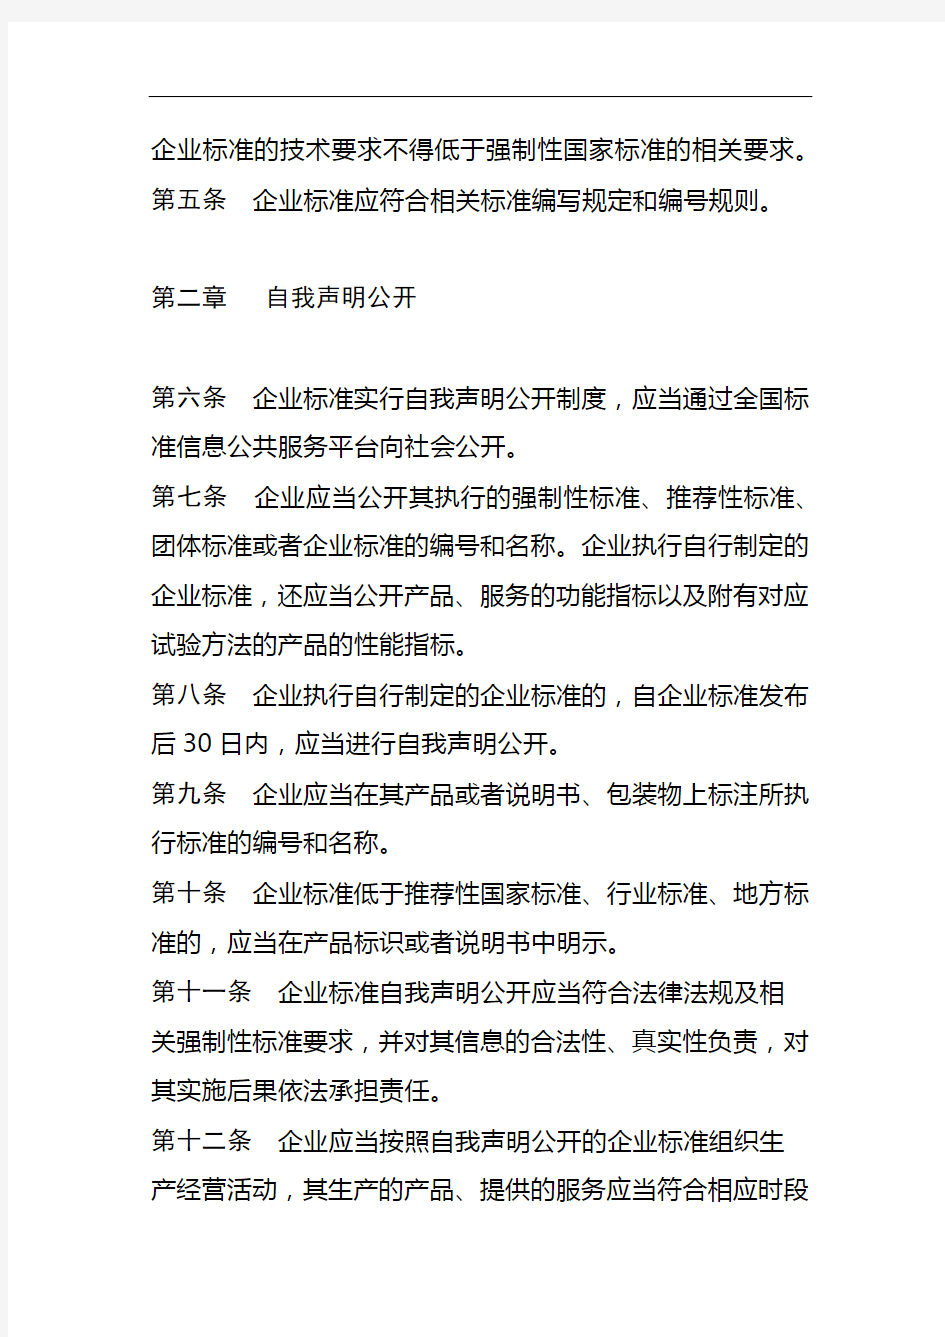 江苏省企业标准自我声明公开和监督管理办法